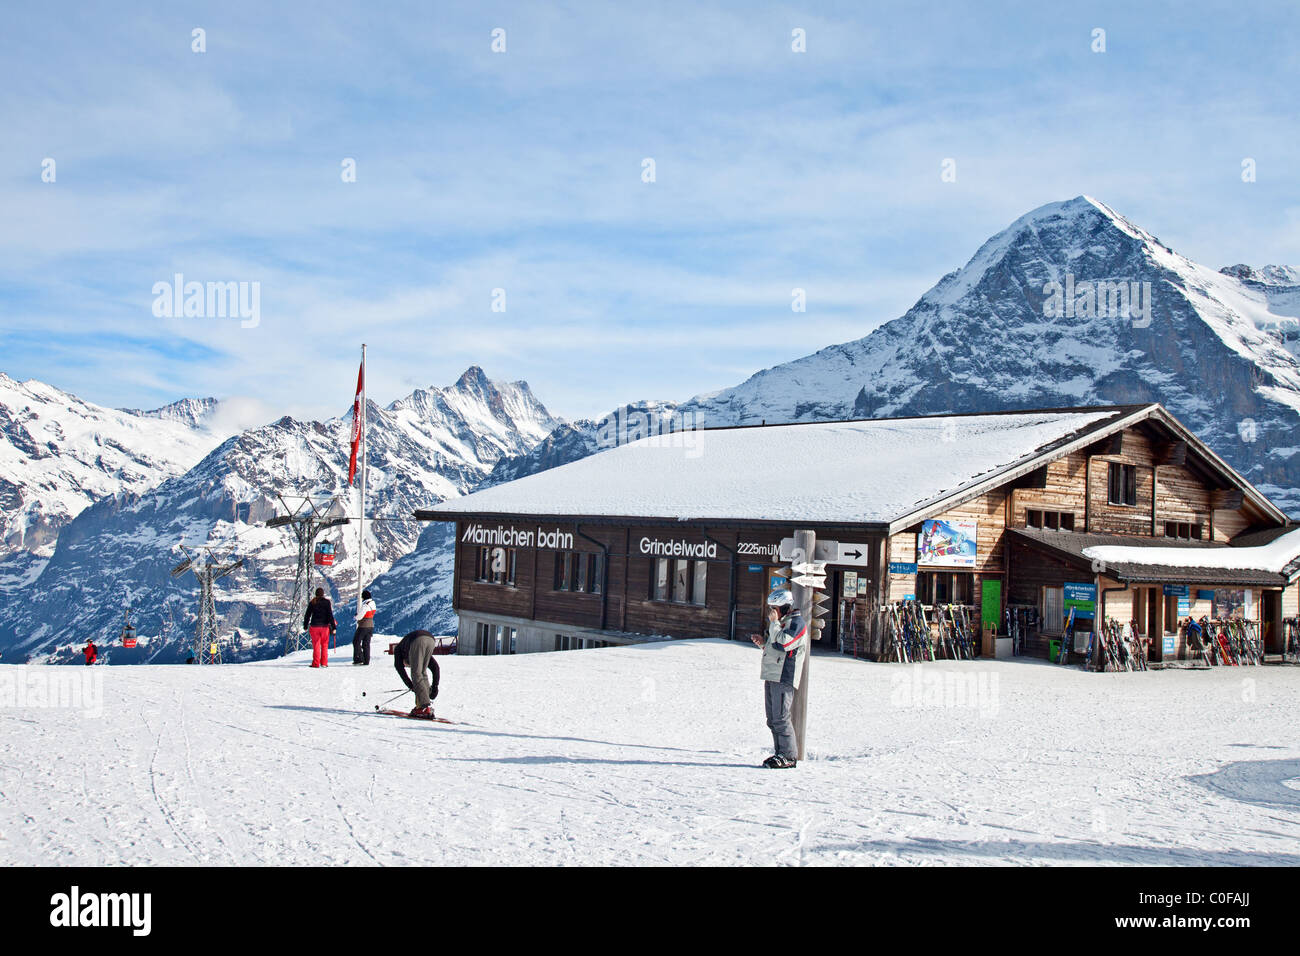 Mannlichen upper gondola ski lift station with Mt Eiger in the background, Bernese Oberland, Switzerland. Stock Photo